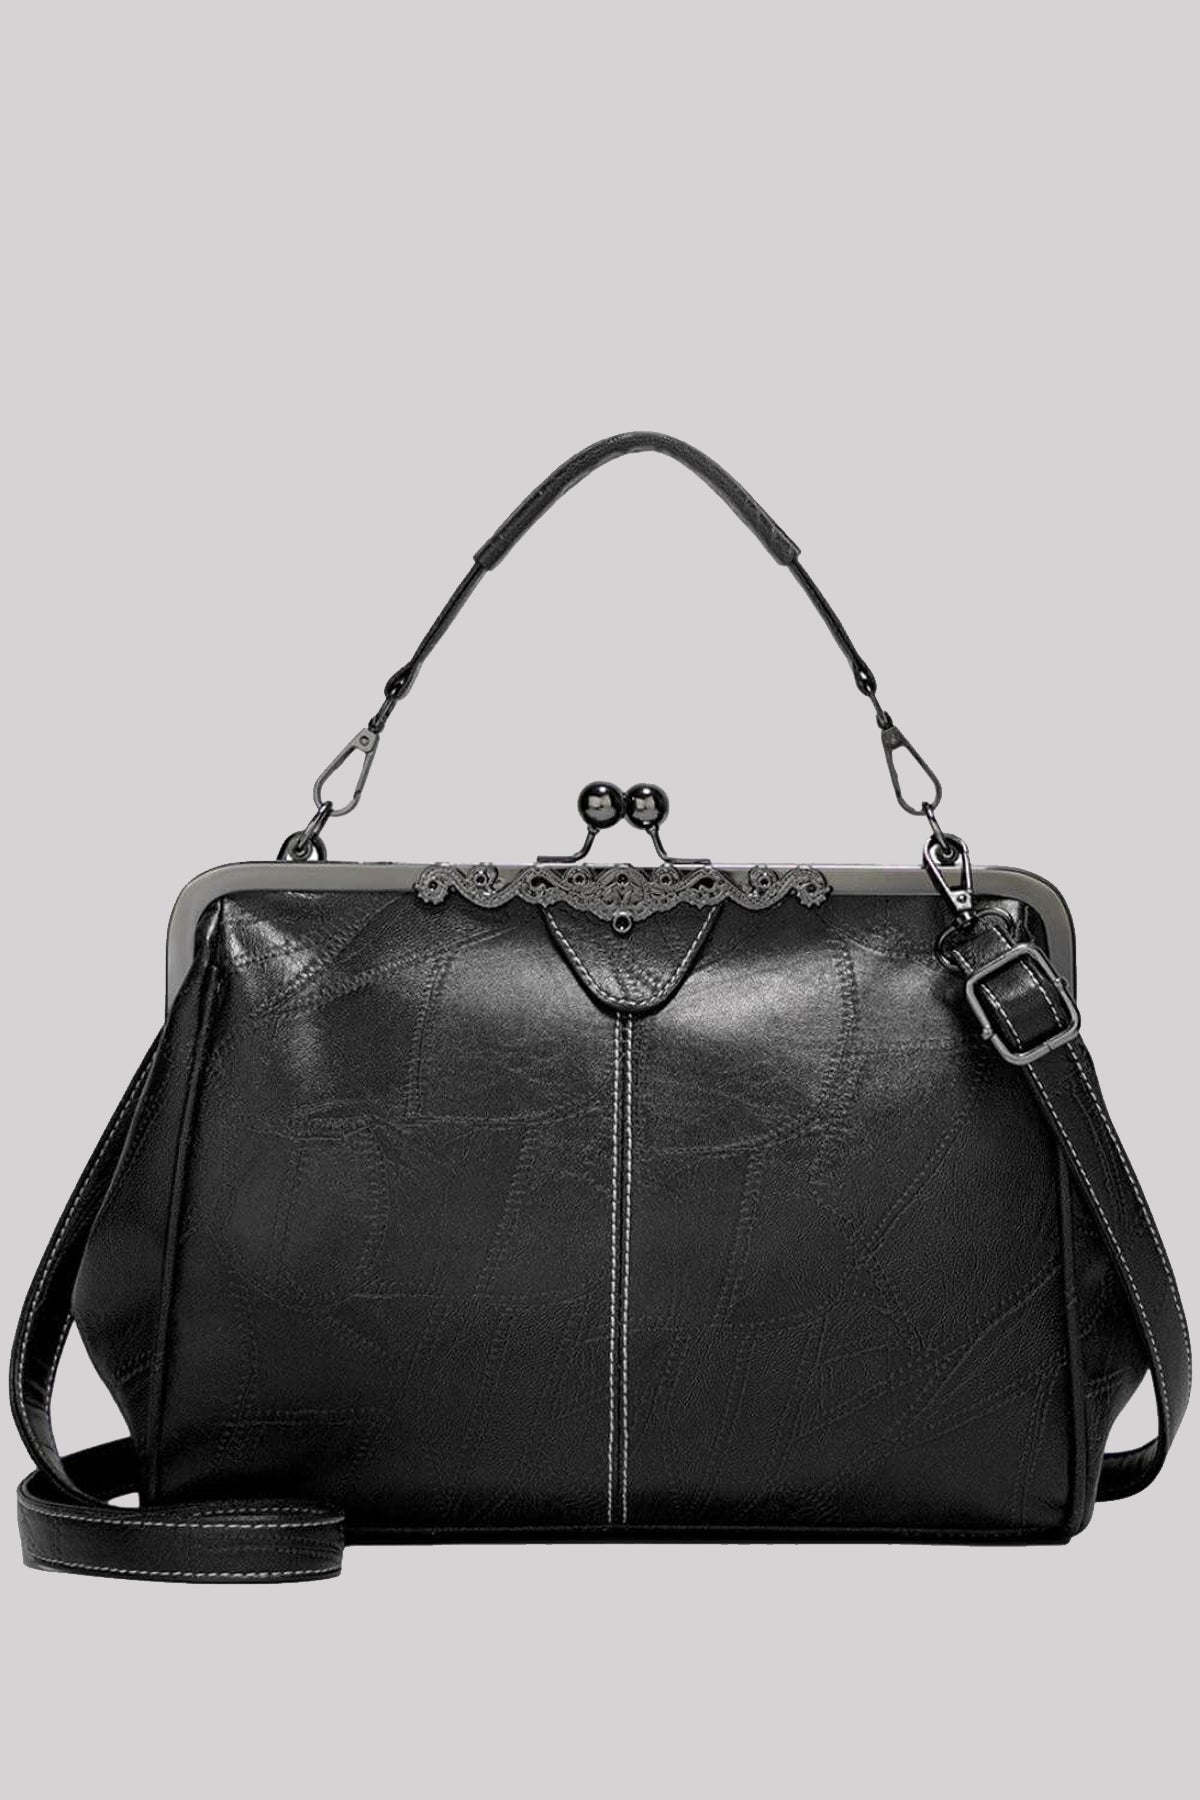 Ro Rox Thorn Retro 1950s Handbag Gothic Bag